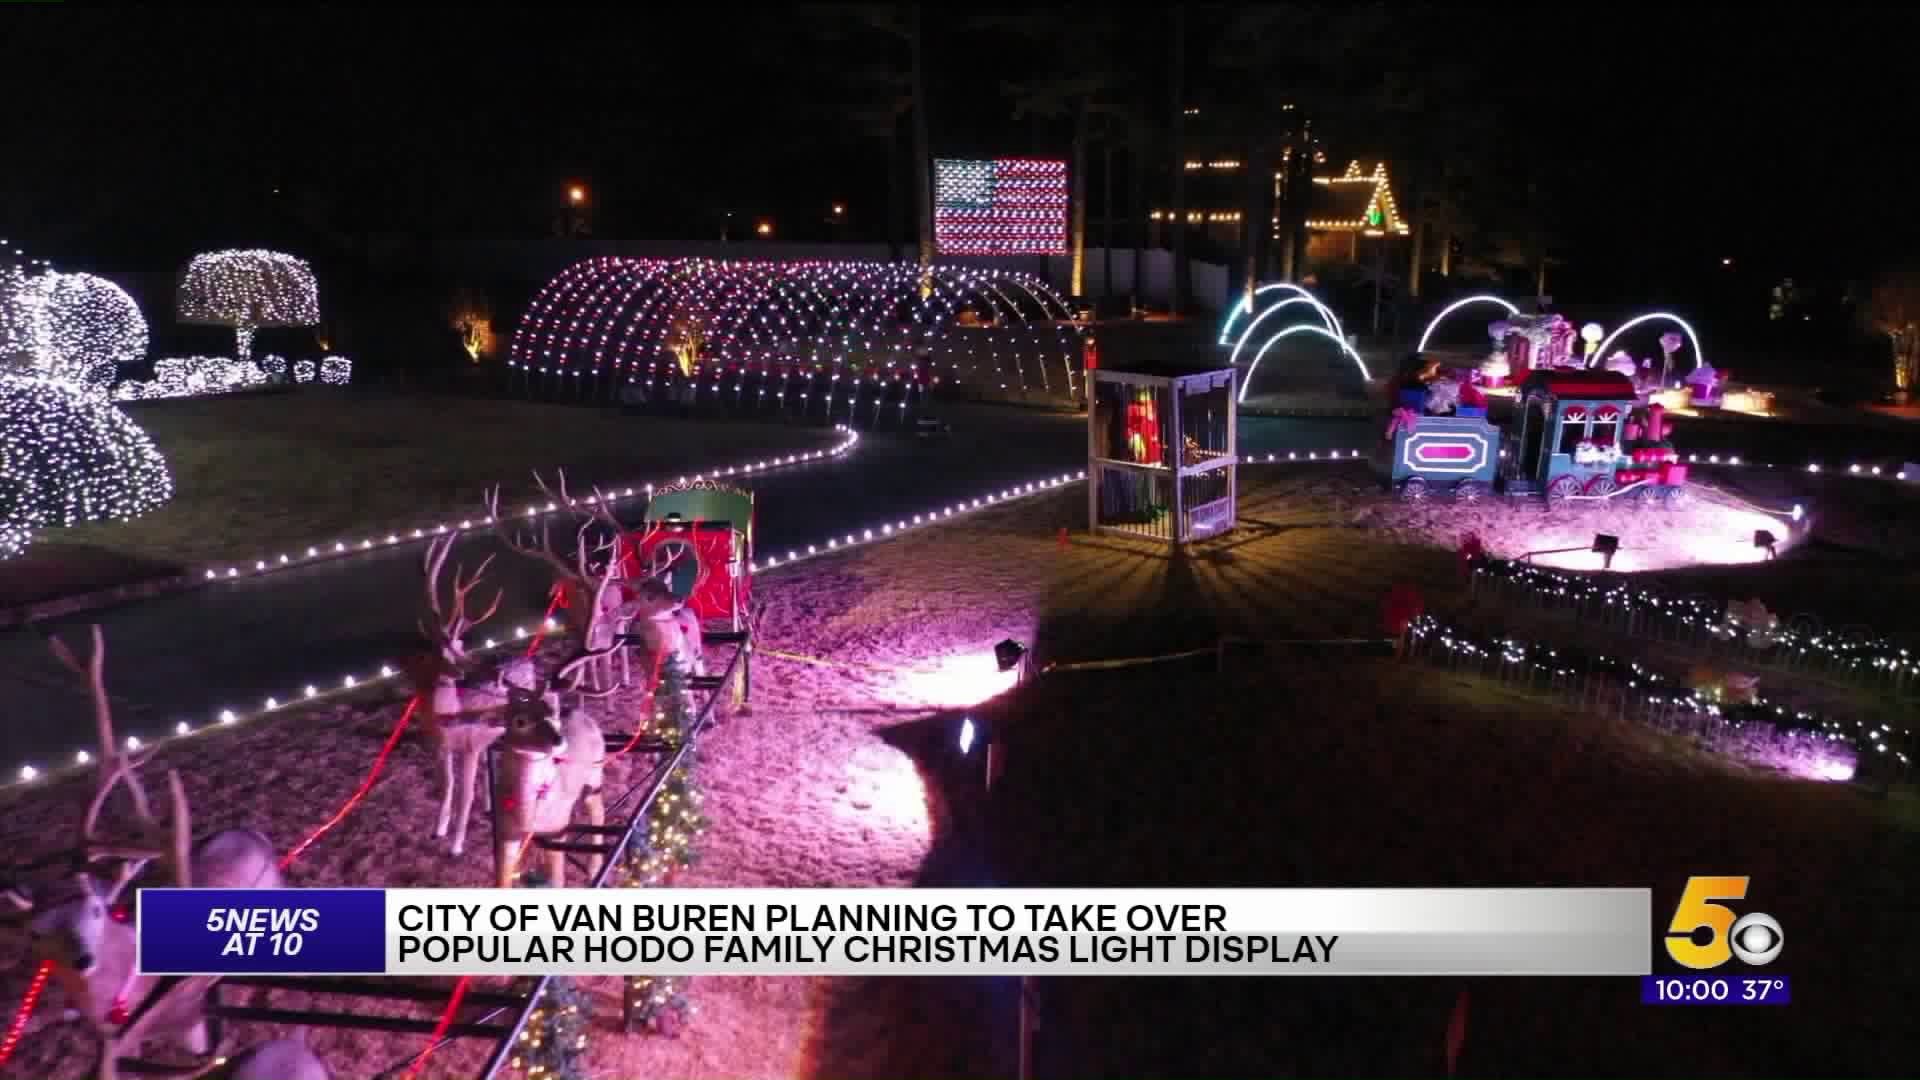 City Of Van Buren Plans On Taking Over Hodo Family Christmas Light Display